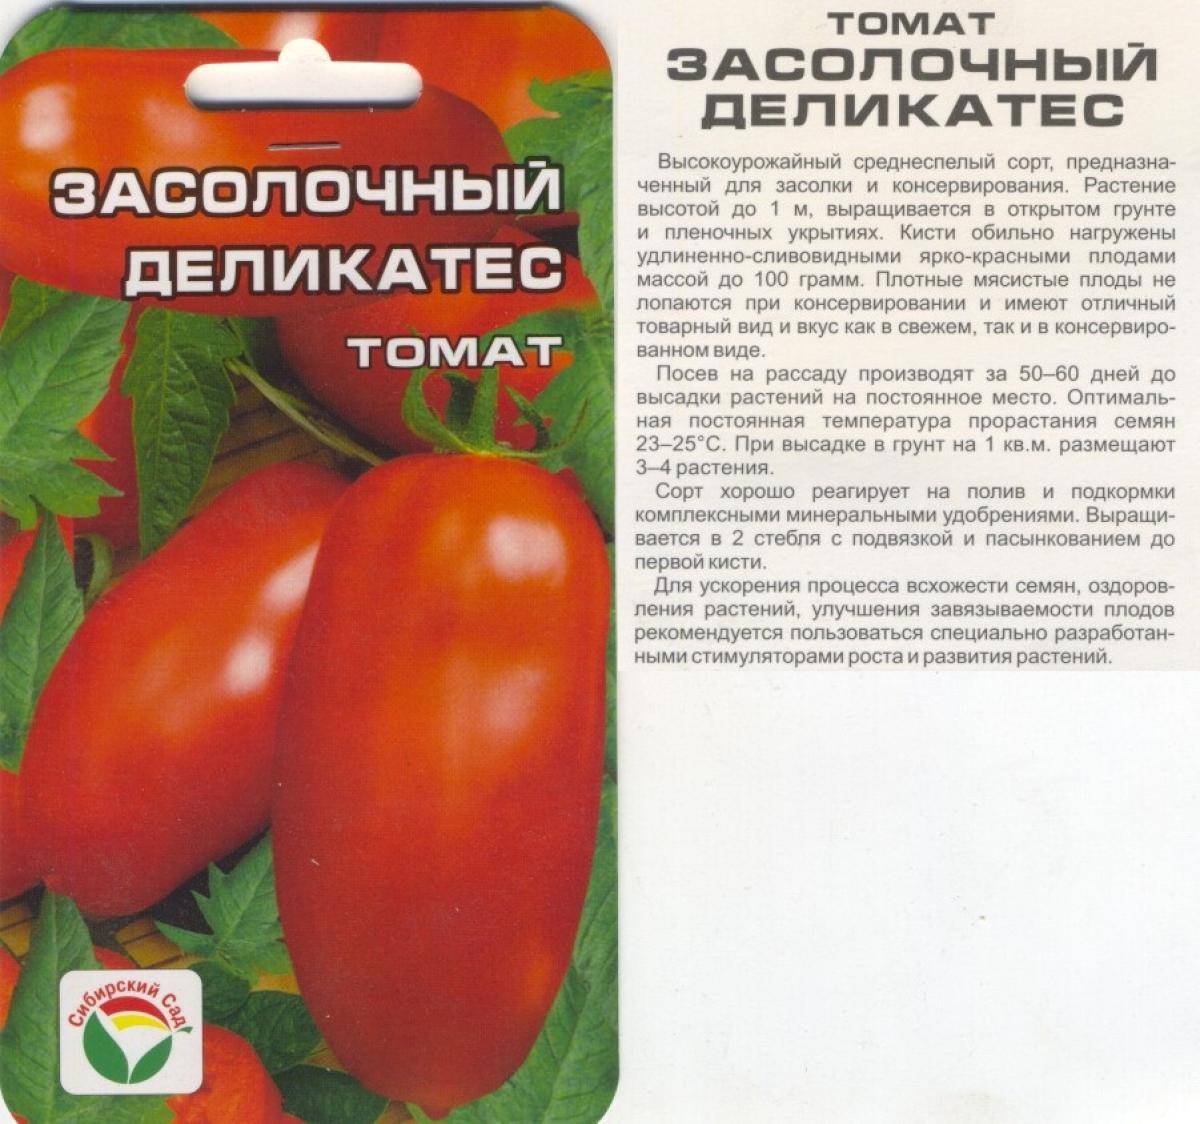 Томат московский деликатес: отзывы, фото, урожайность